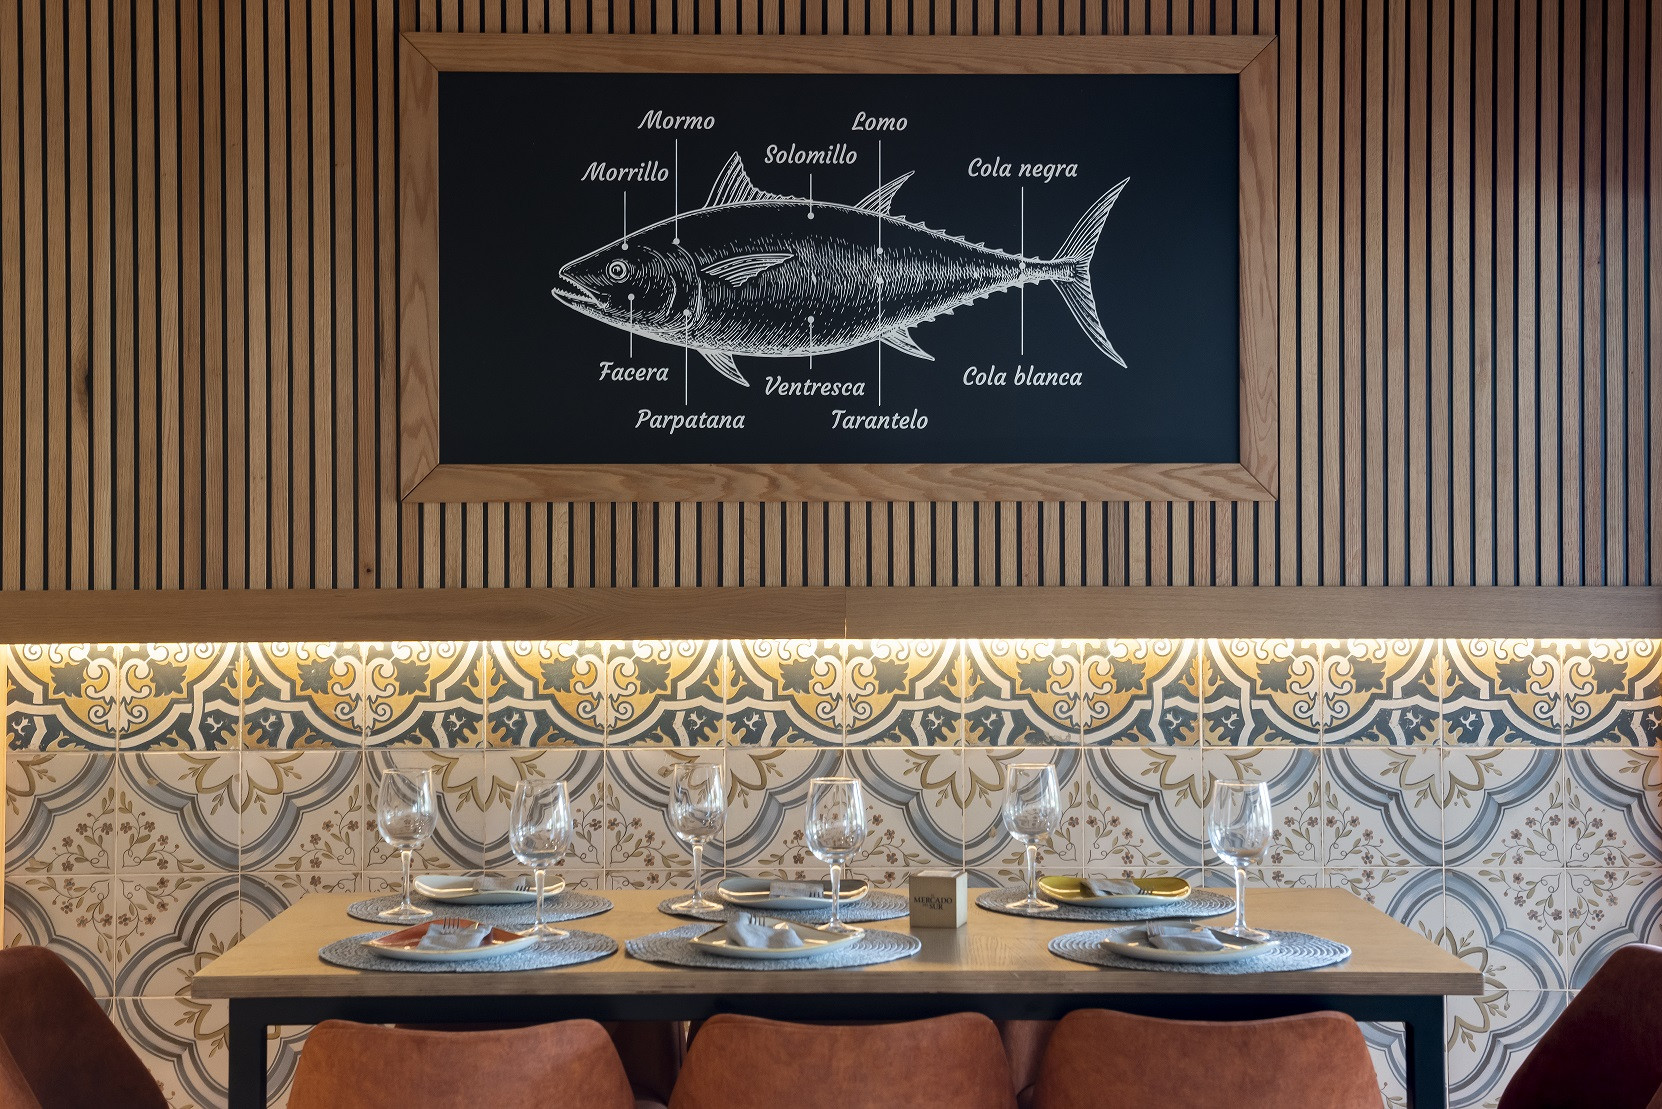 El restaurante El Mercado del Sur se especializa en el atún rojo